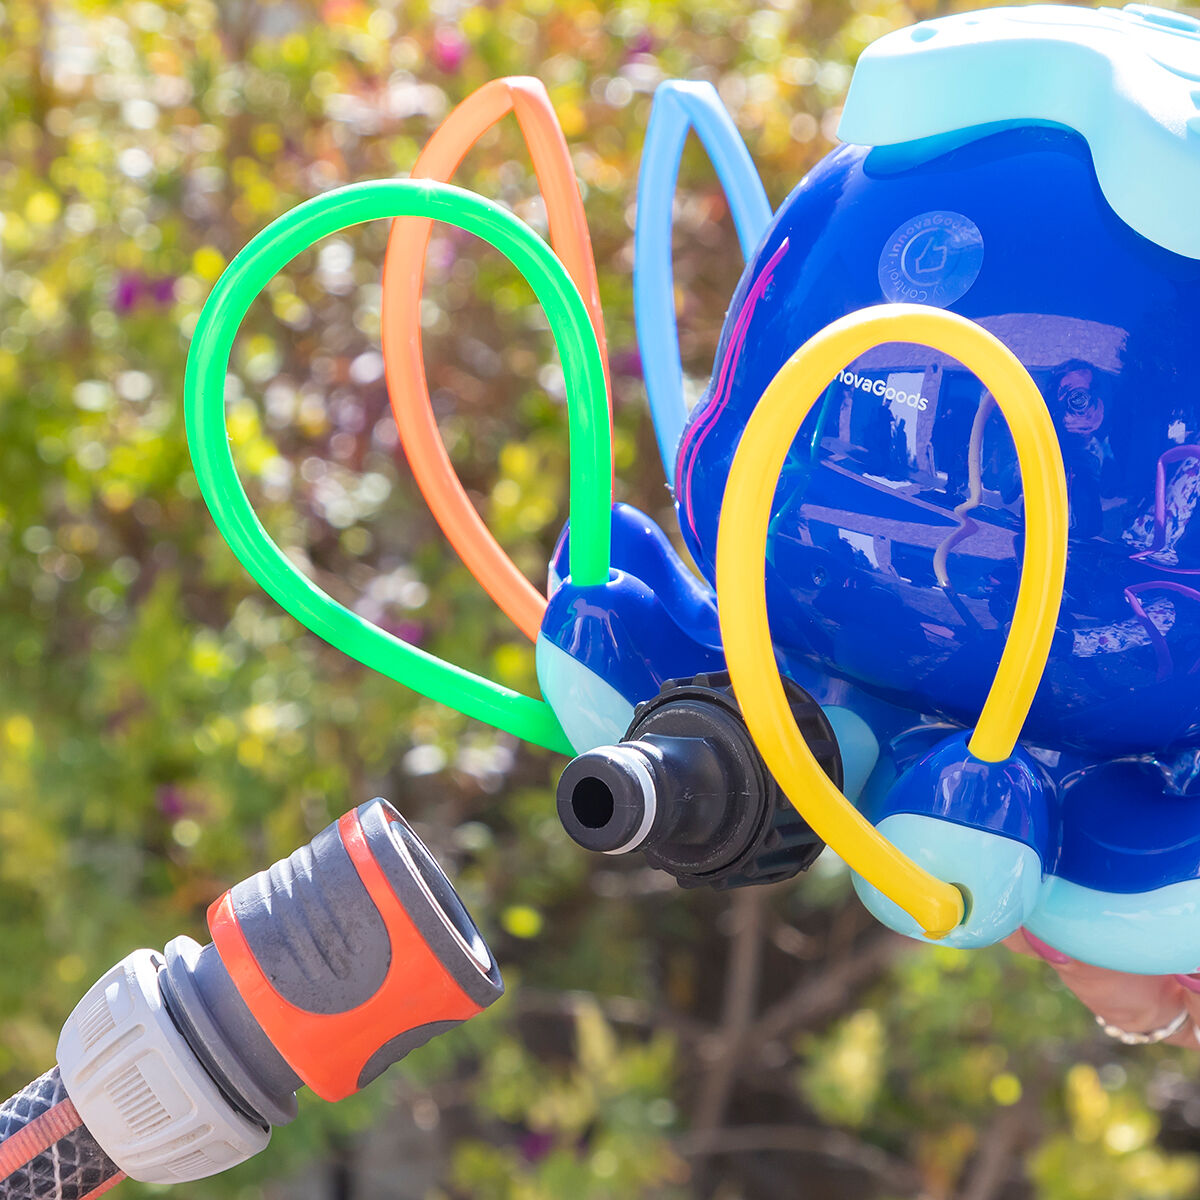 Kaufe Wassersprinkler-Spielzeug Octodrop InnovaGoods bei AWK Flagship um € 29.00